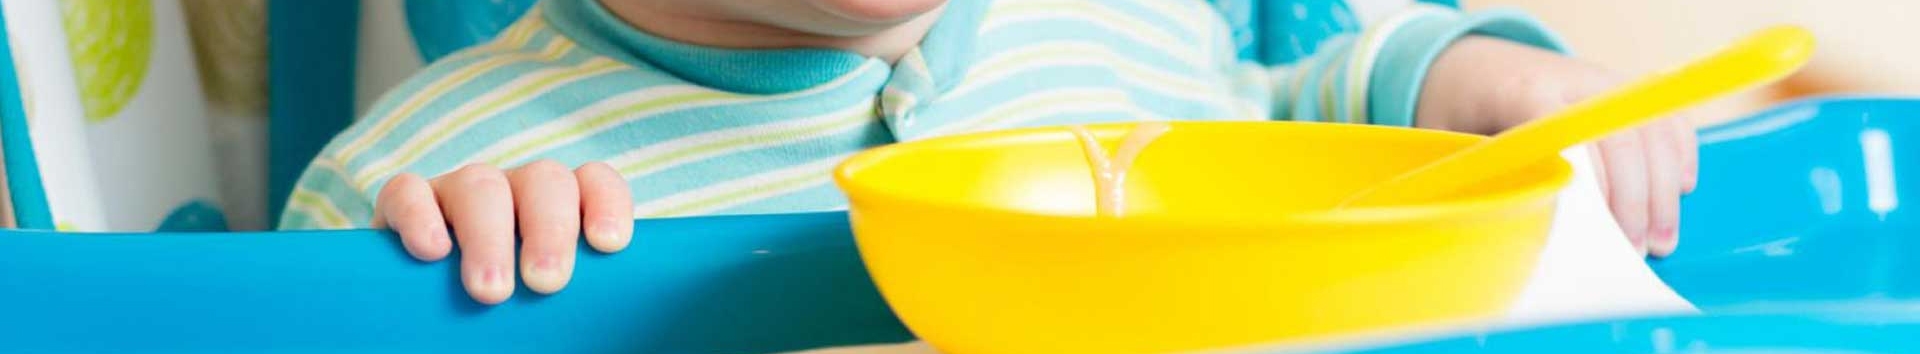 Congelando o alimento do bebê: Papinha, leite materno e mais